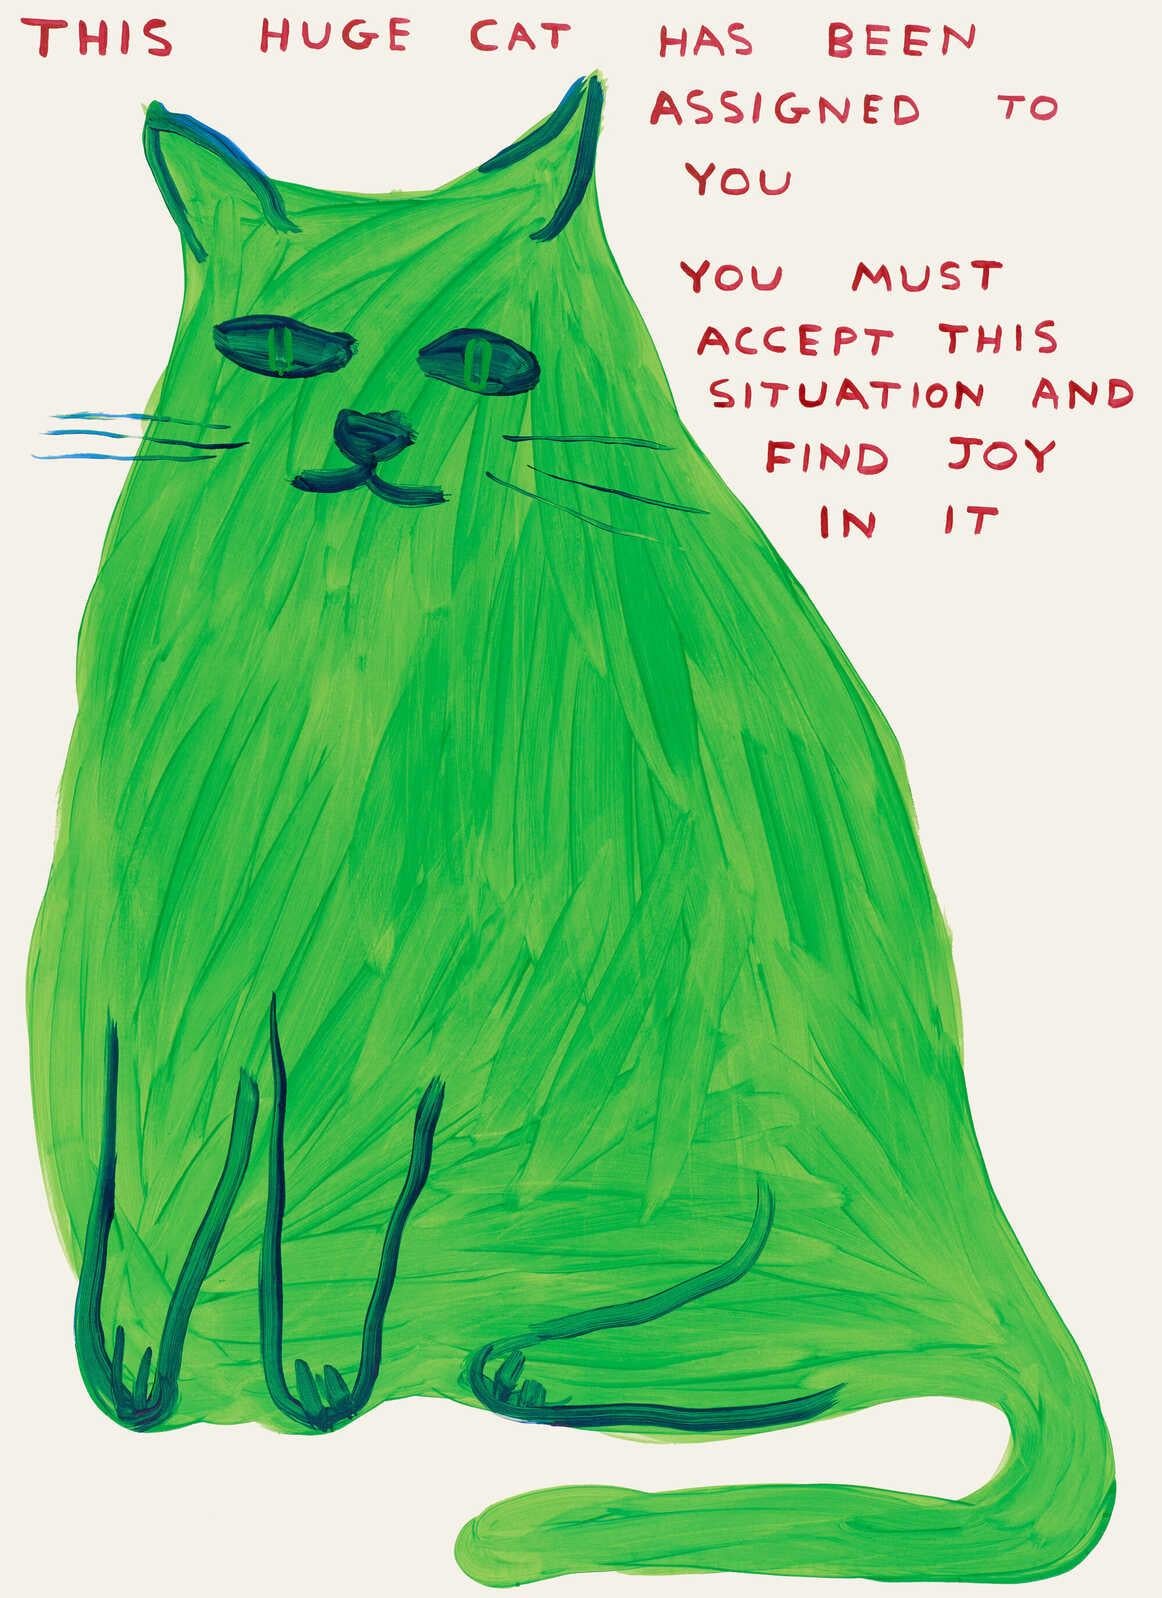 David Shrigley, „Diese große Katze“, 2023

Offsetlithografie auf 200 g/m² Arctic Vol Papier

31 1/2 × 23 3/5 Zoll  80 × 60 cm

David Shrigley wurde 1968 in Macclesfield, Großbritannien, geboren. Er lebt und arbeitet in Brighton und Devon,